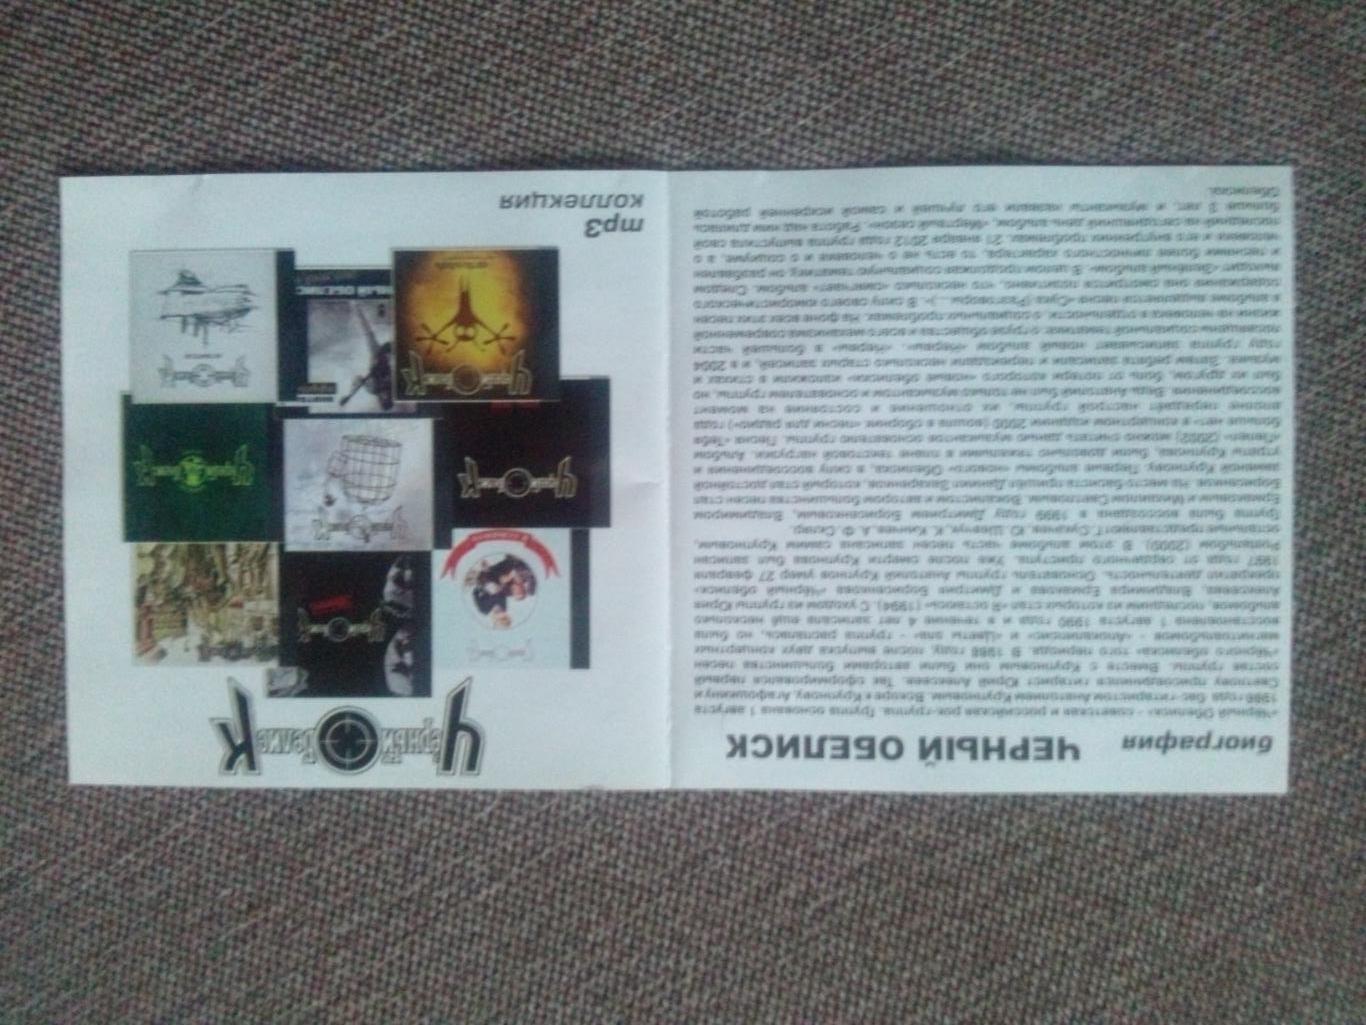 MP - 3 CD : группа Черный обелиск 1991 - 2012 гг. (13 альбомов) Русский рок 2